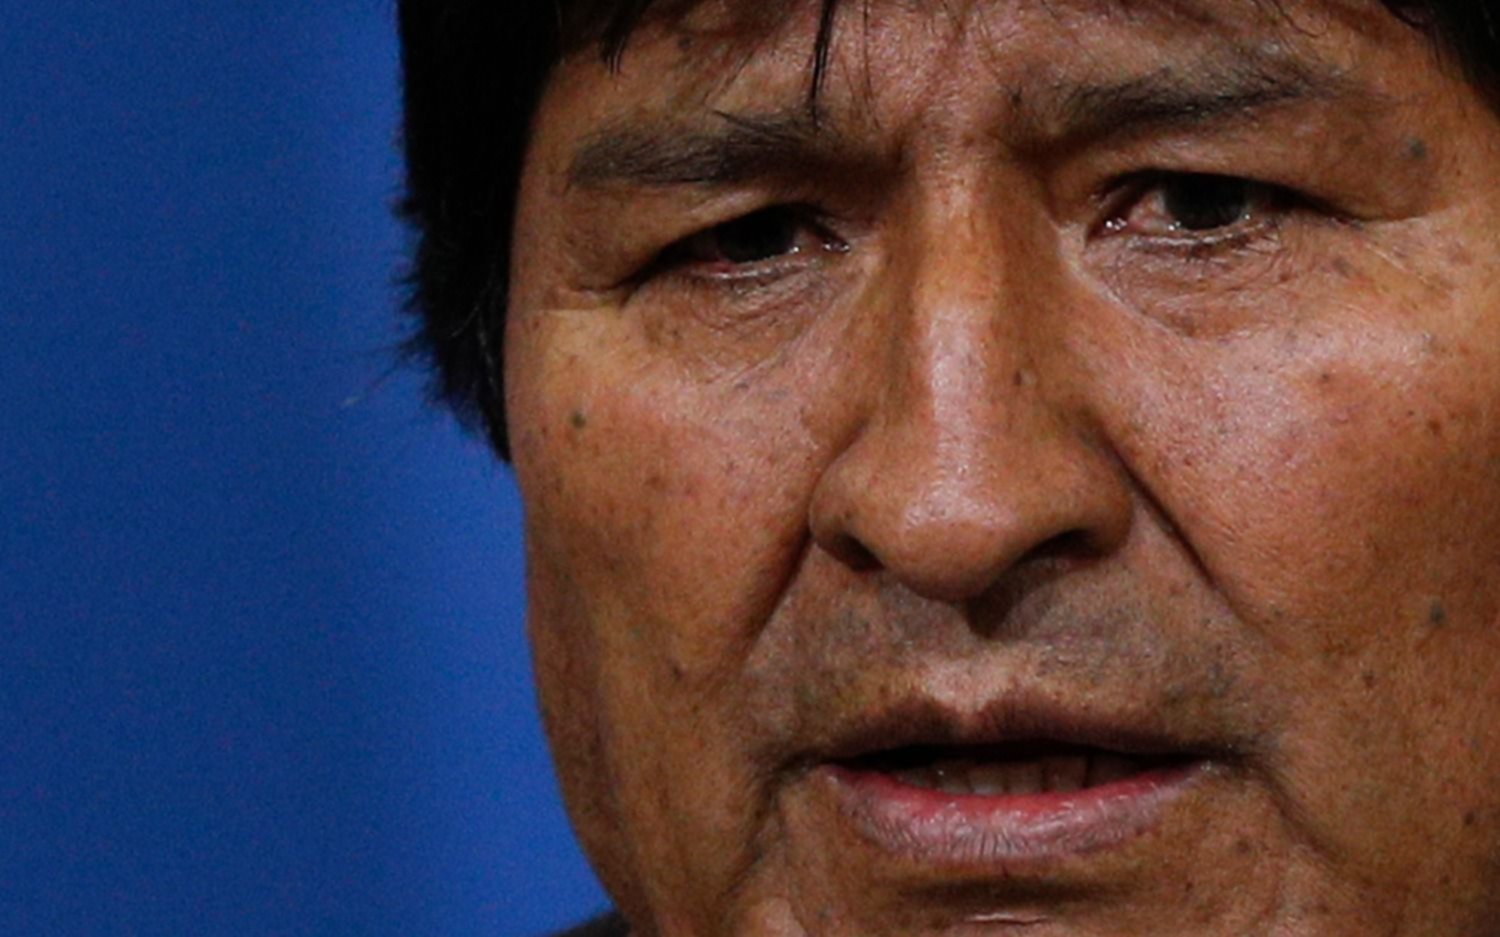 El Parlamento boliviano recibe la carta de renuncia de Evo Morales